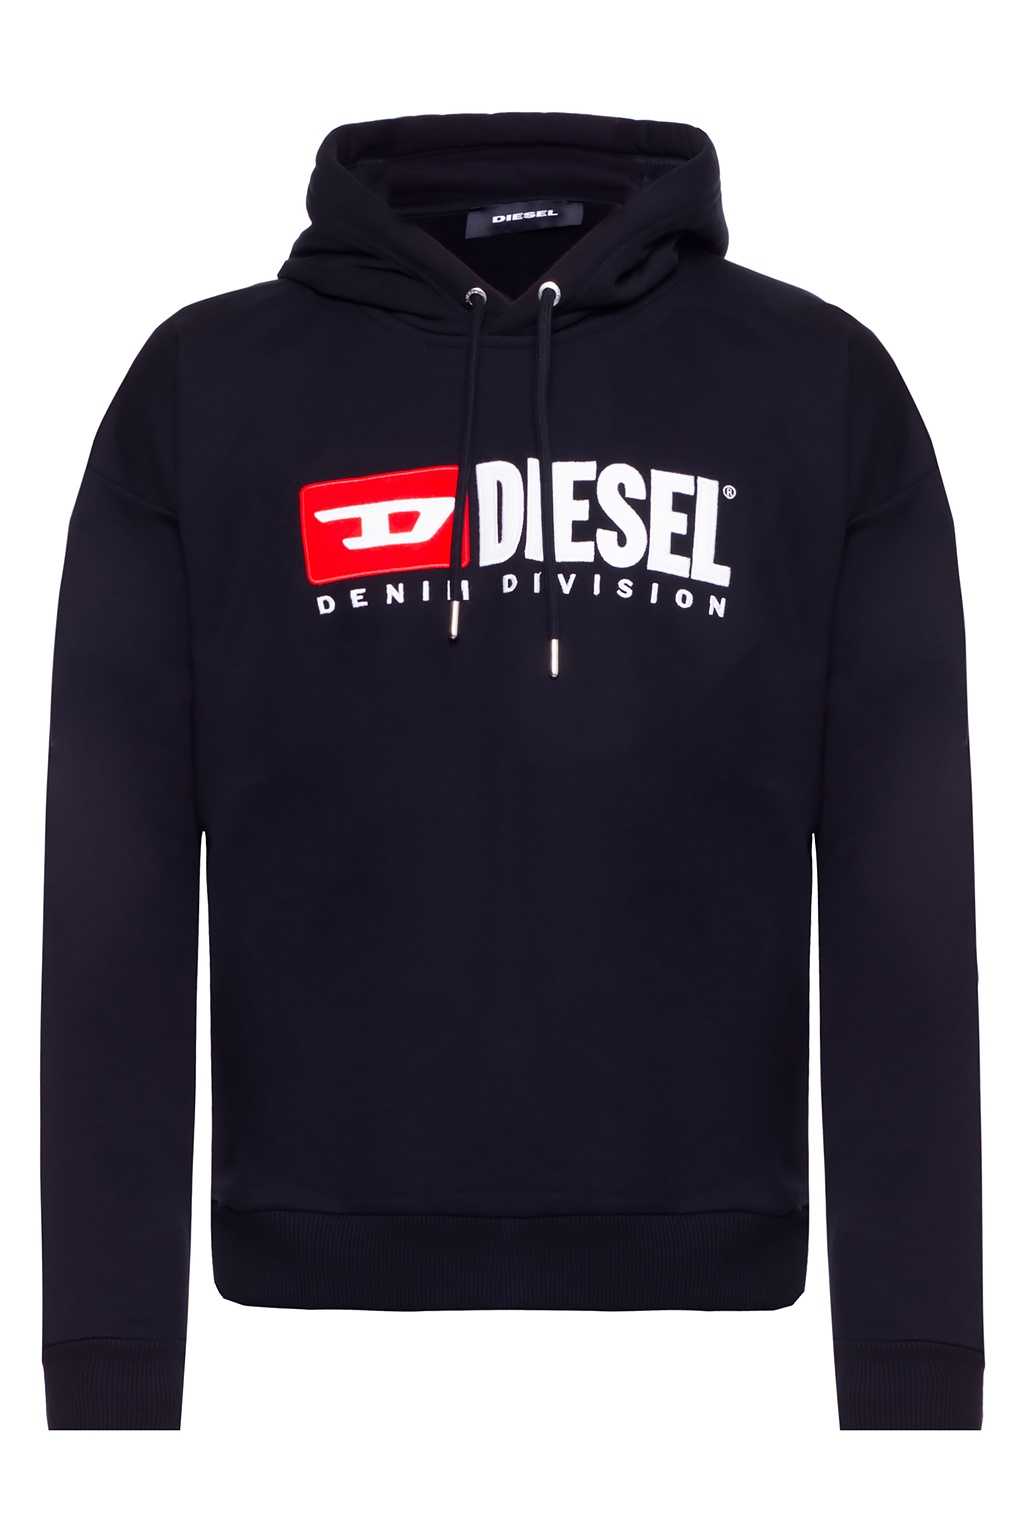 Diesel ‘S-DIVISION’ hoodie